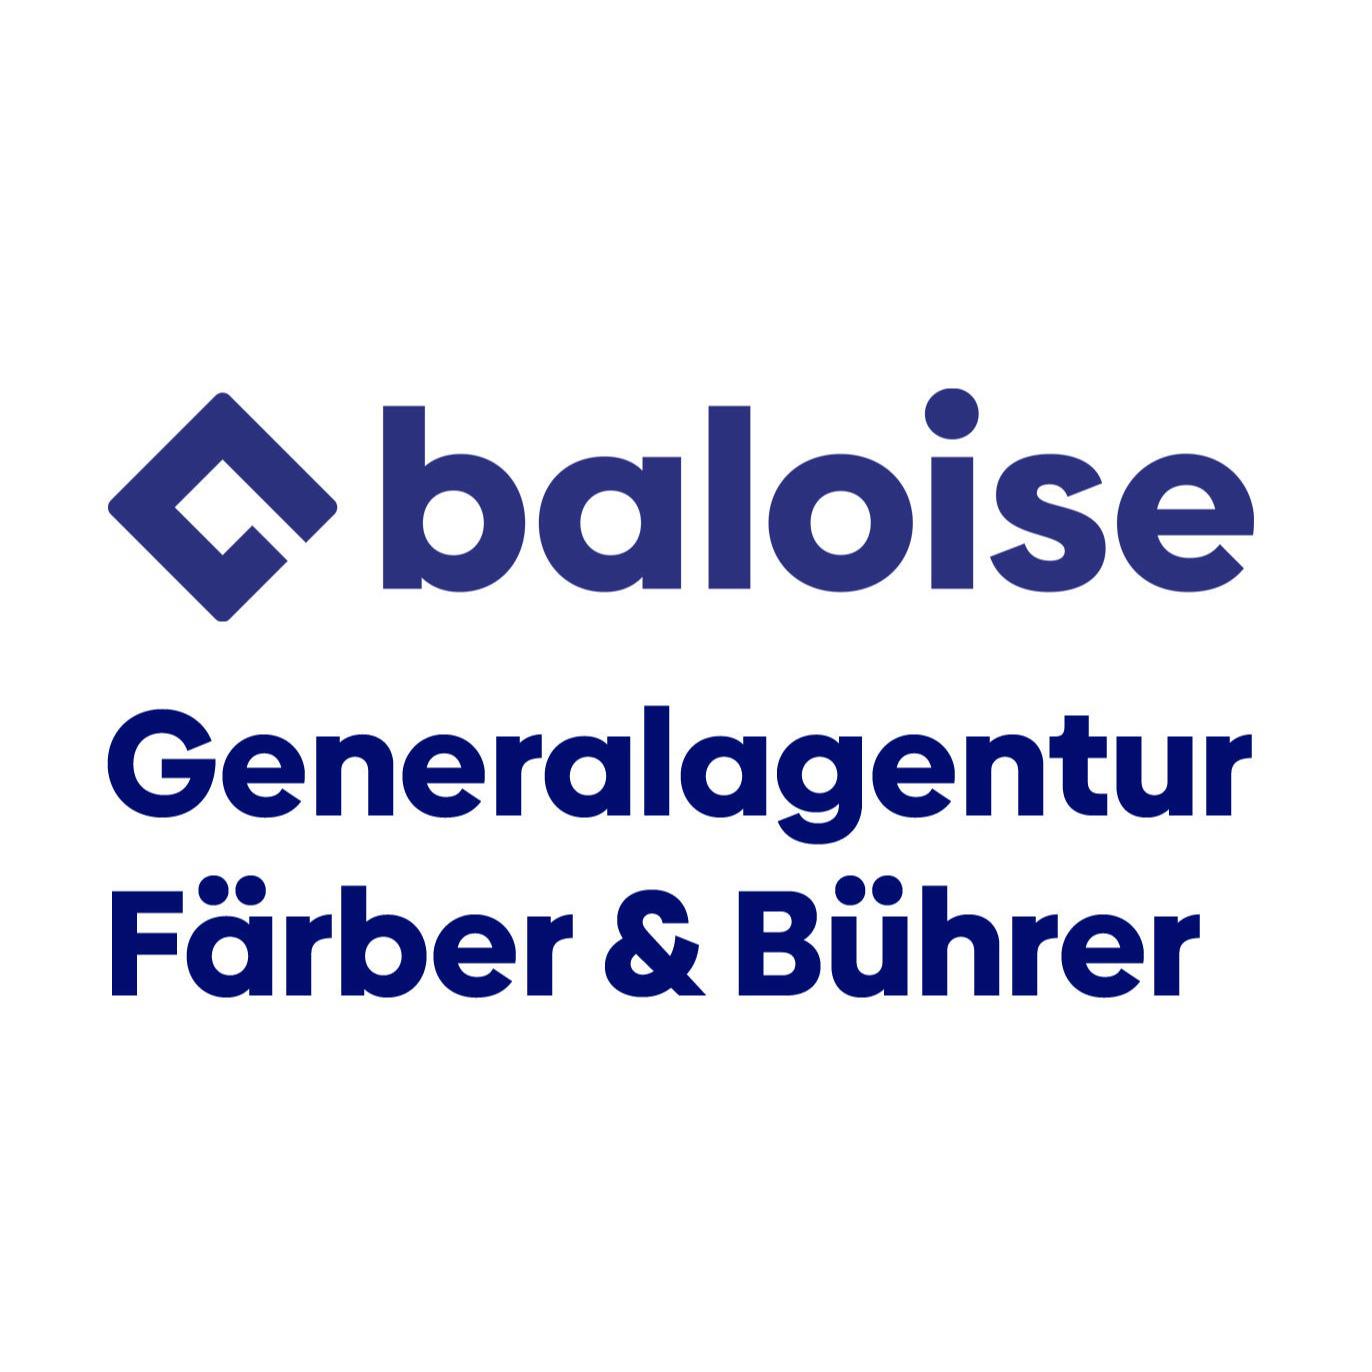 Baloise - Generalagentur Färber & Bührer in Herbolzheim Logo